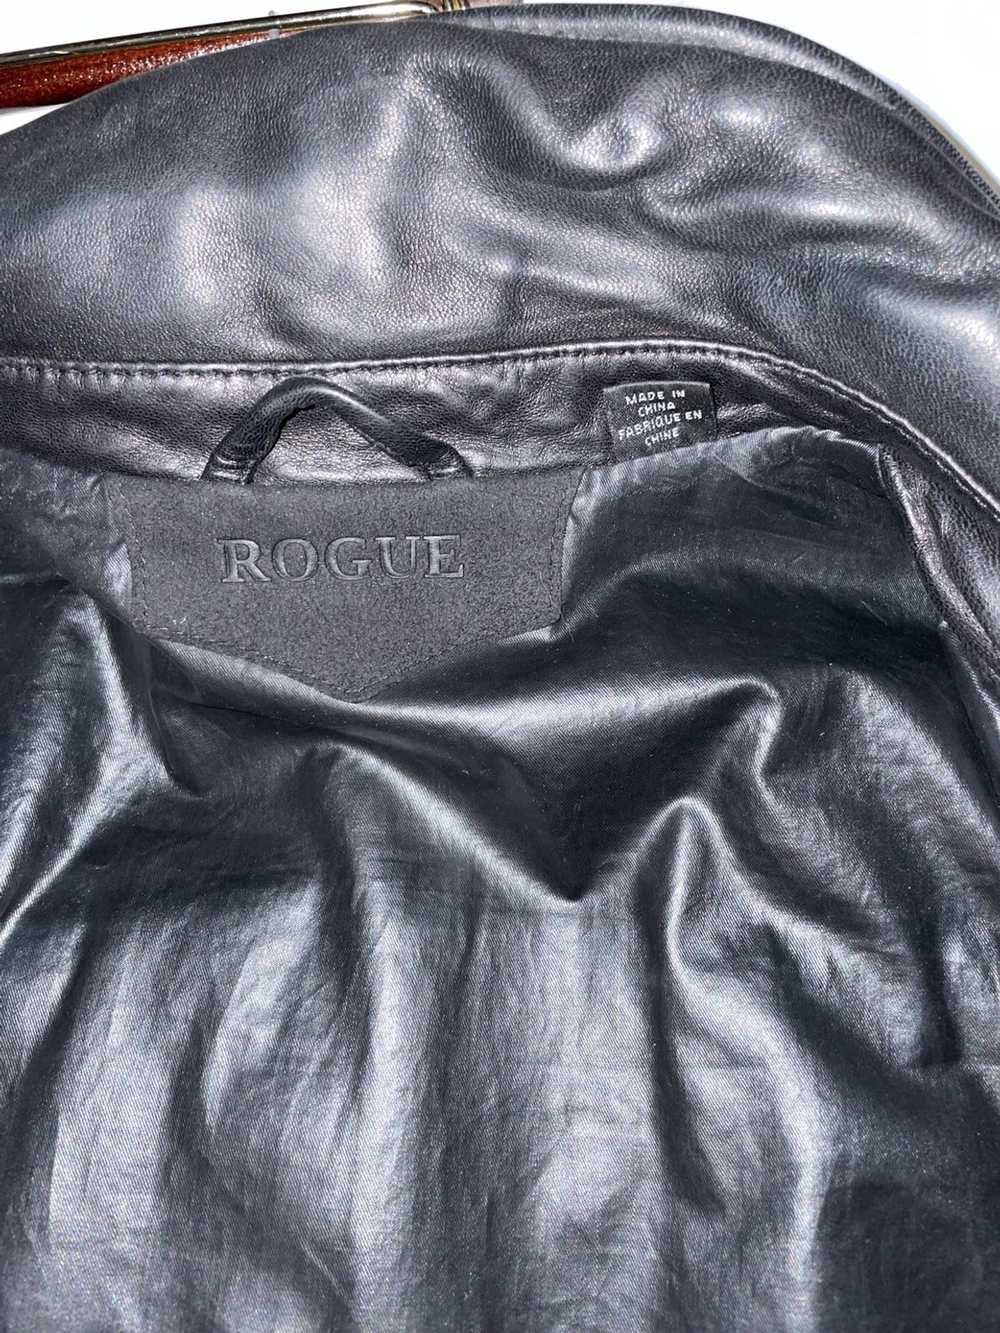 Rogue Leather shirt Jacket - image 5